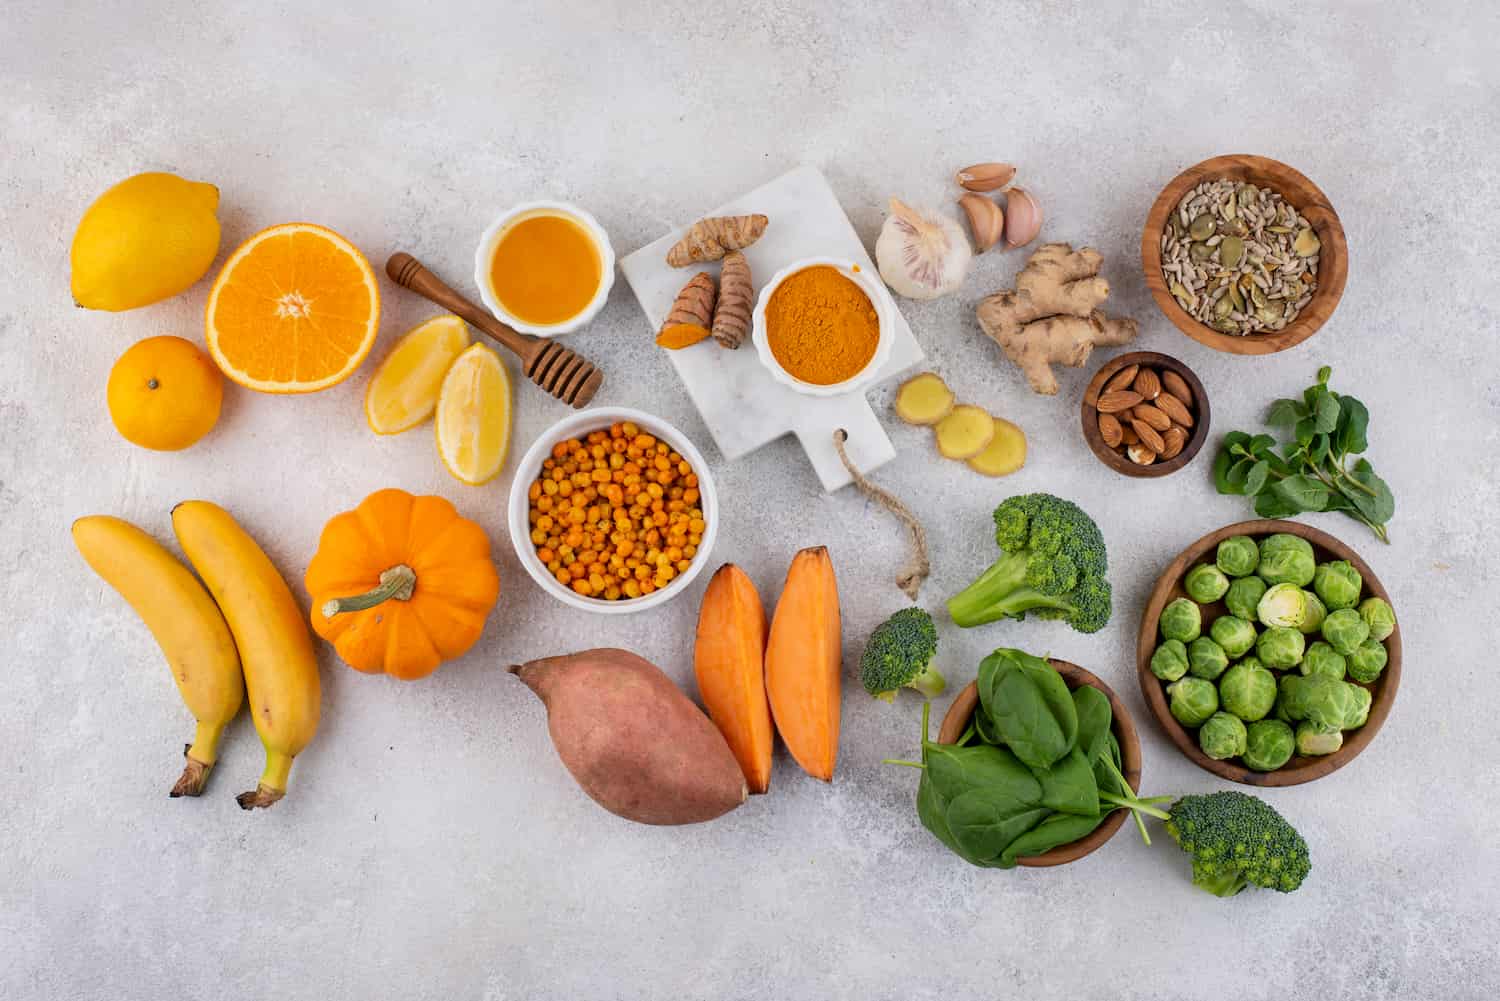 Los alimentos frescos y naturales son una excelente fuente de vitaminas y minerales que fortalecen tu sistema inmunológico.